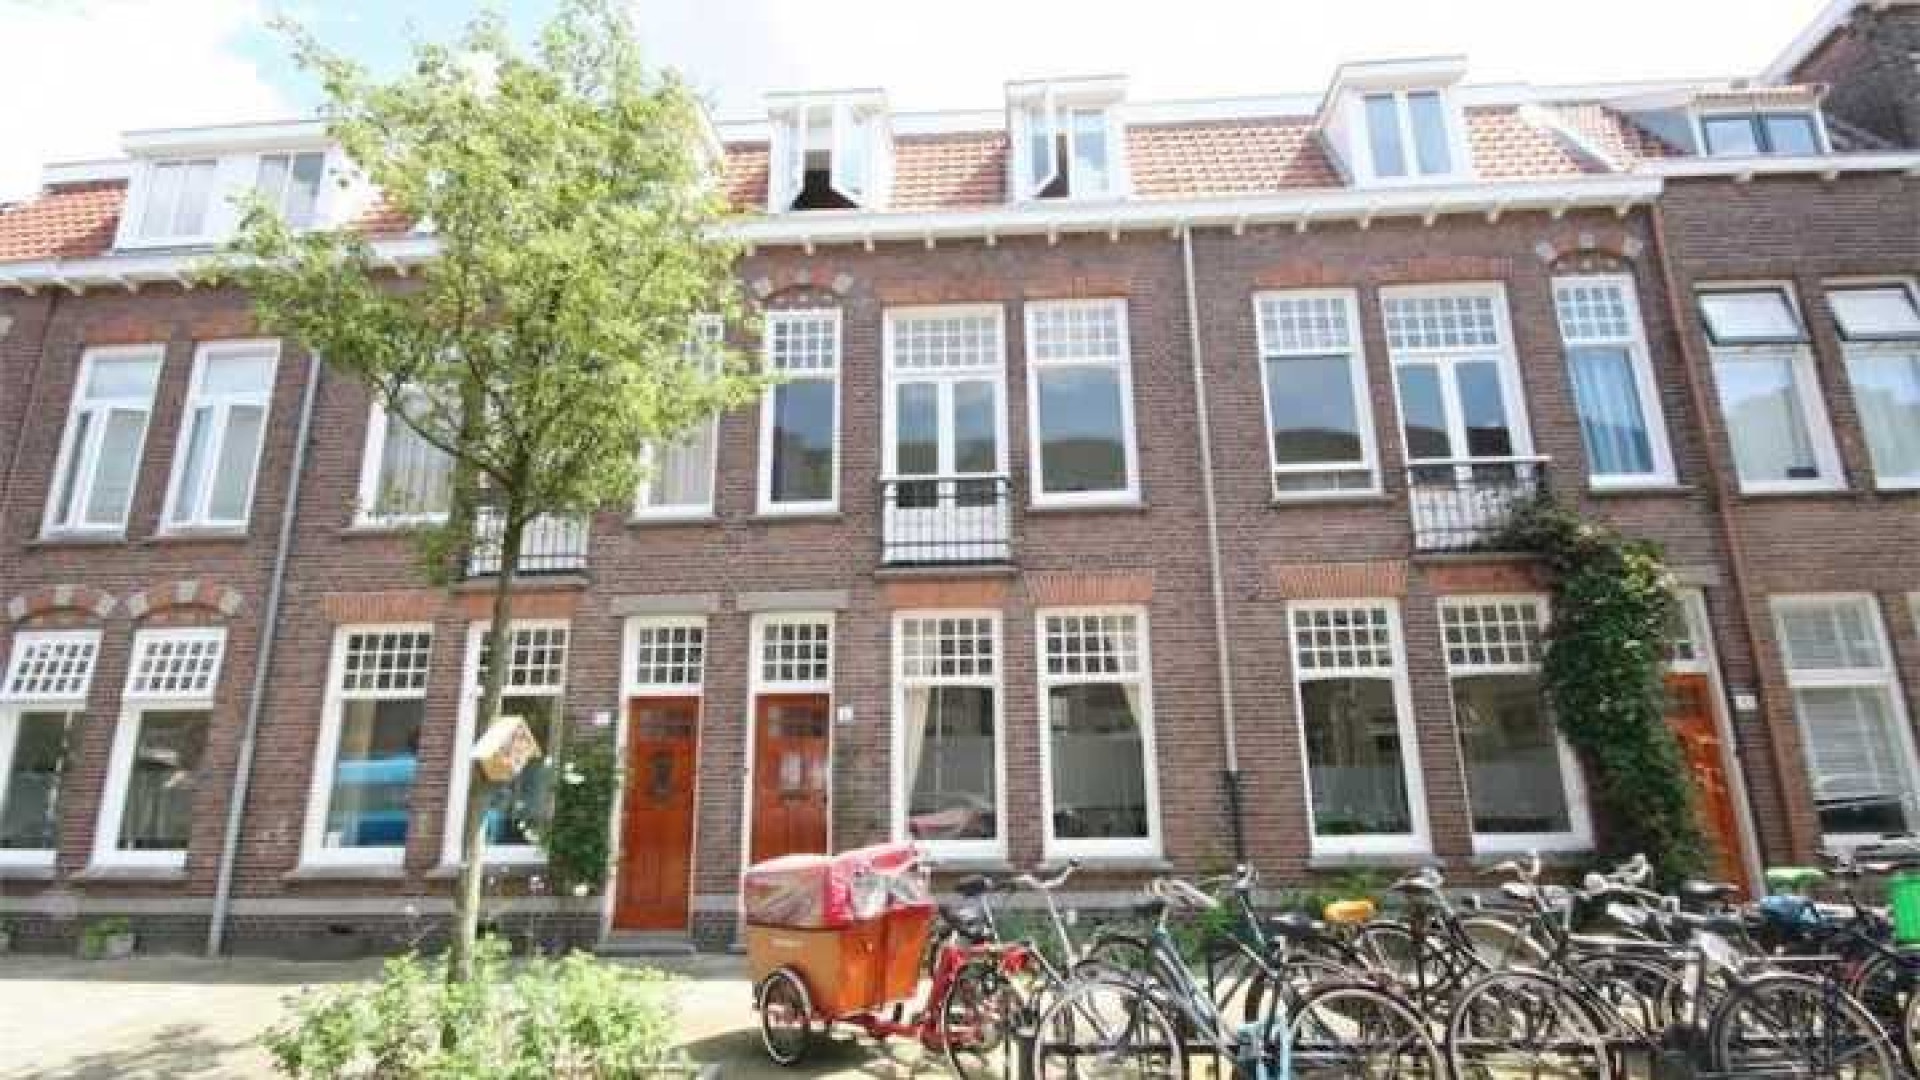 Binnenkijken in prachtige Utrechtse herenhuis van Gouden Kalf winnaar Fedja van Huet. Zie foto's 1